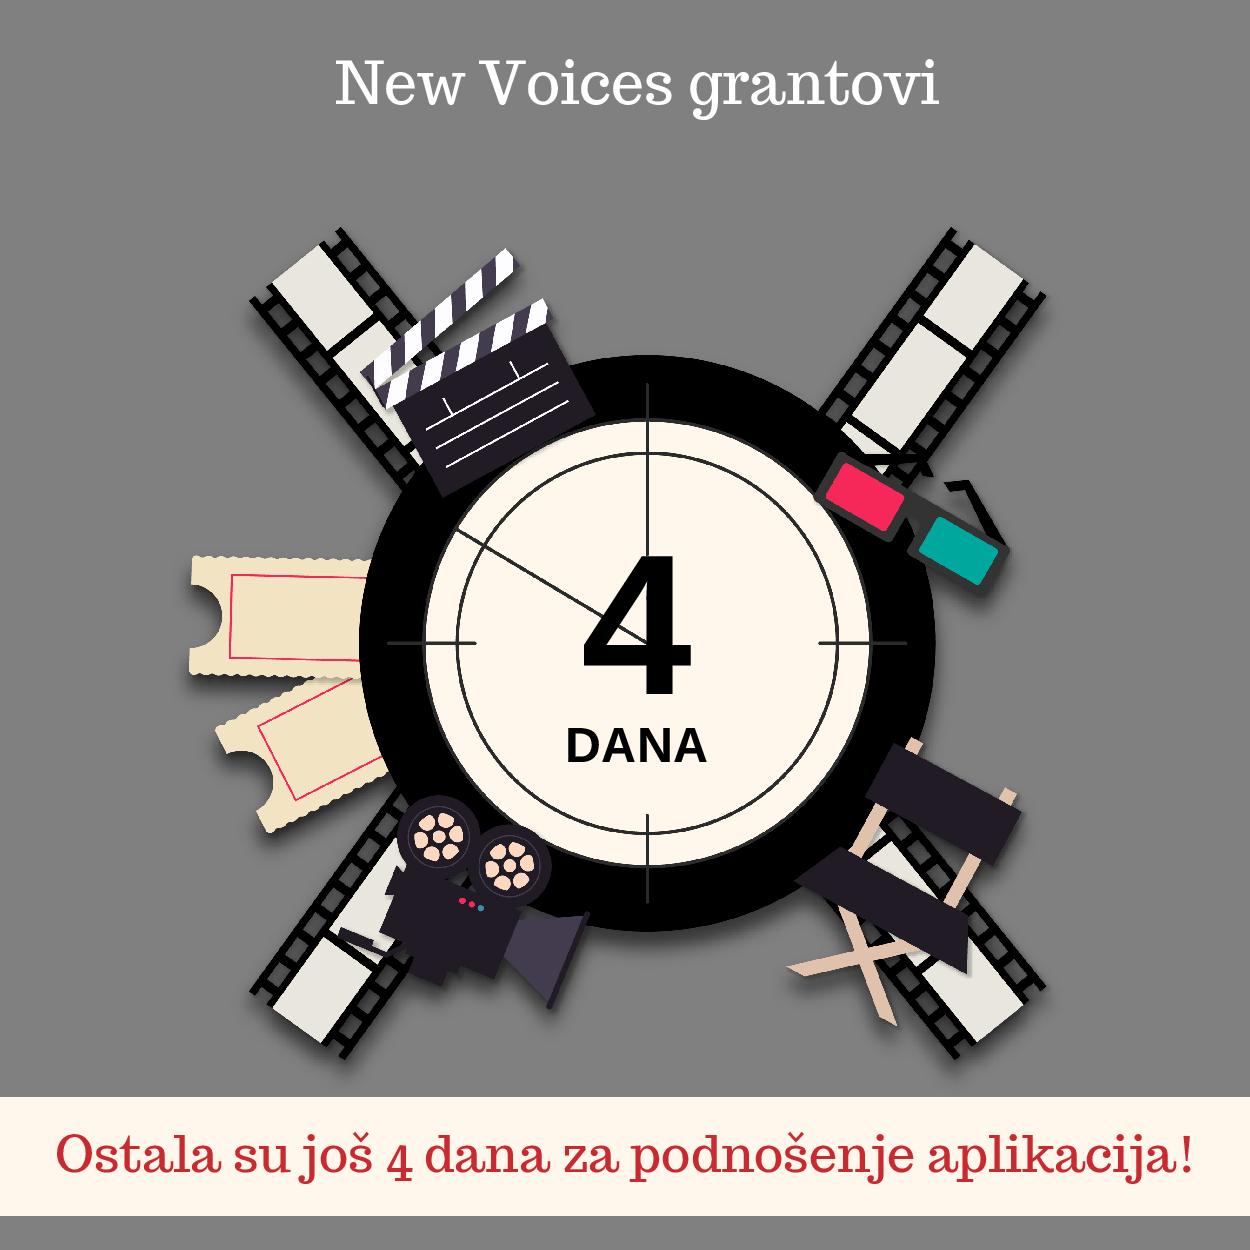 CPCD / Javni poziv za nove glasove u BiH